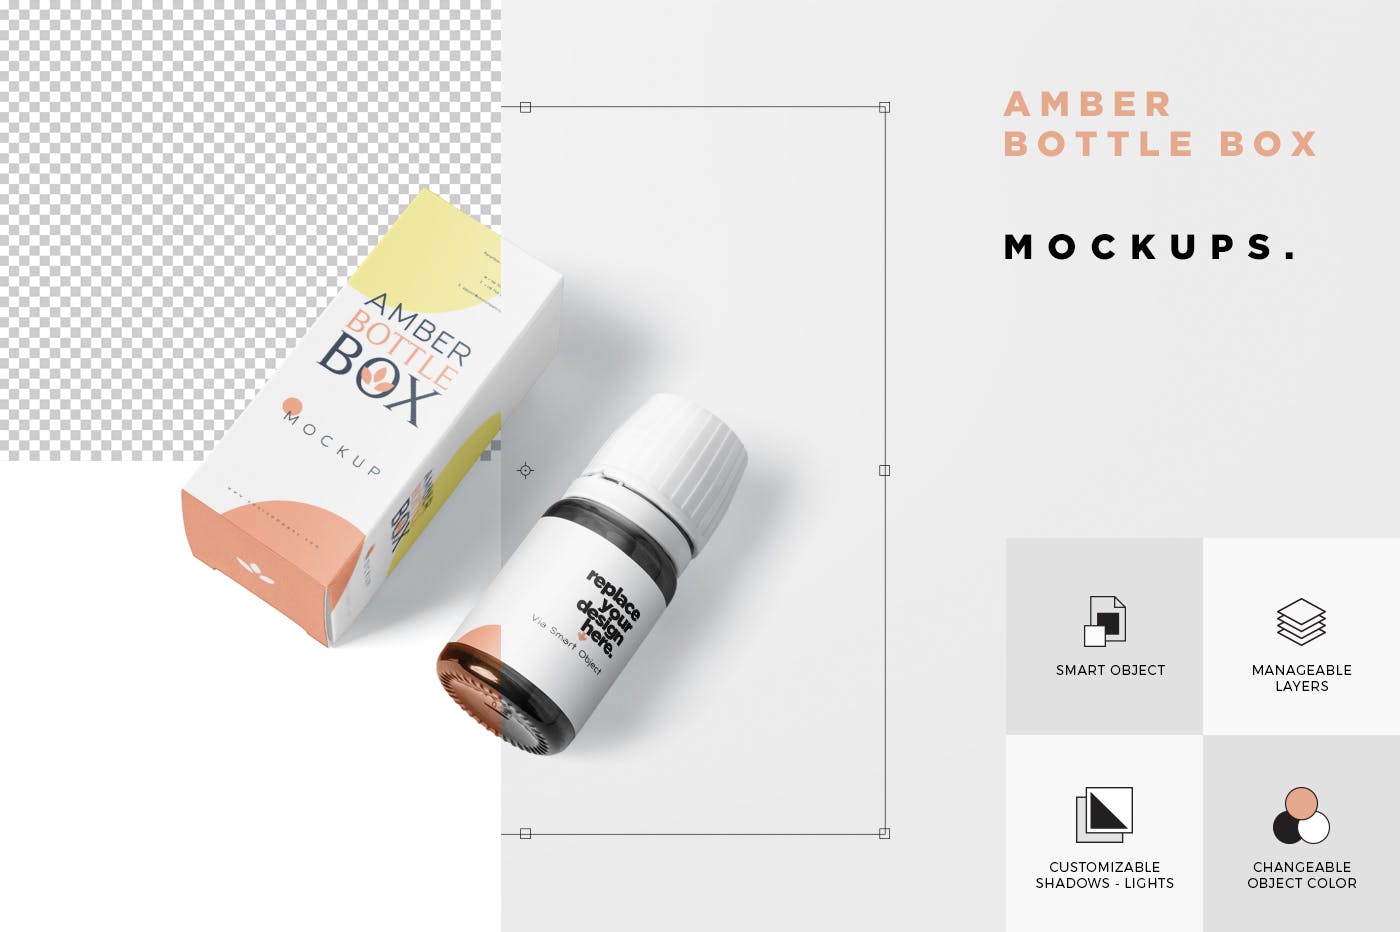 药物瓶&包装纸盒设计图第一素材精选模板 Amber Bottle Box Mockup Set插图(6)